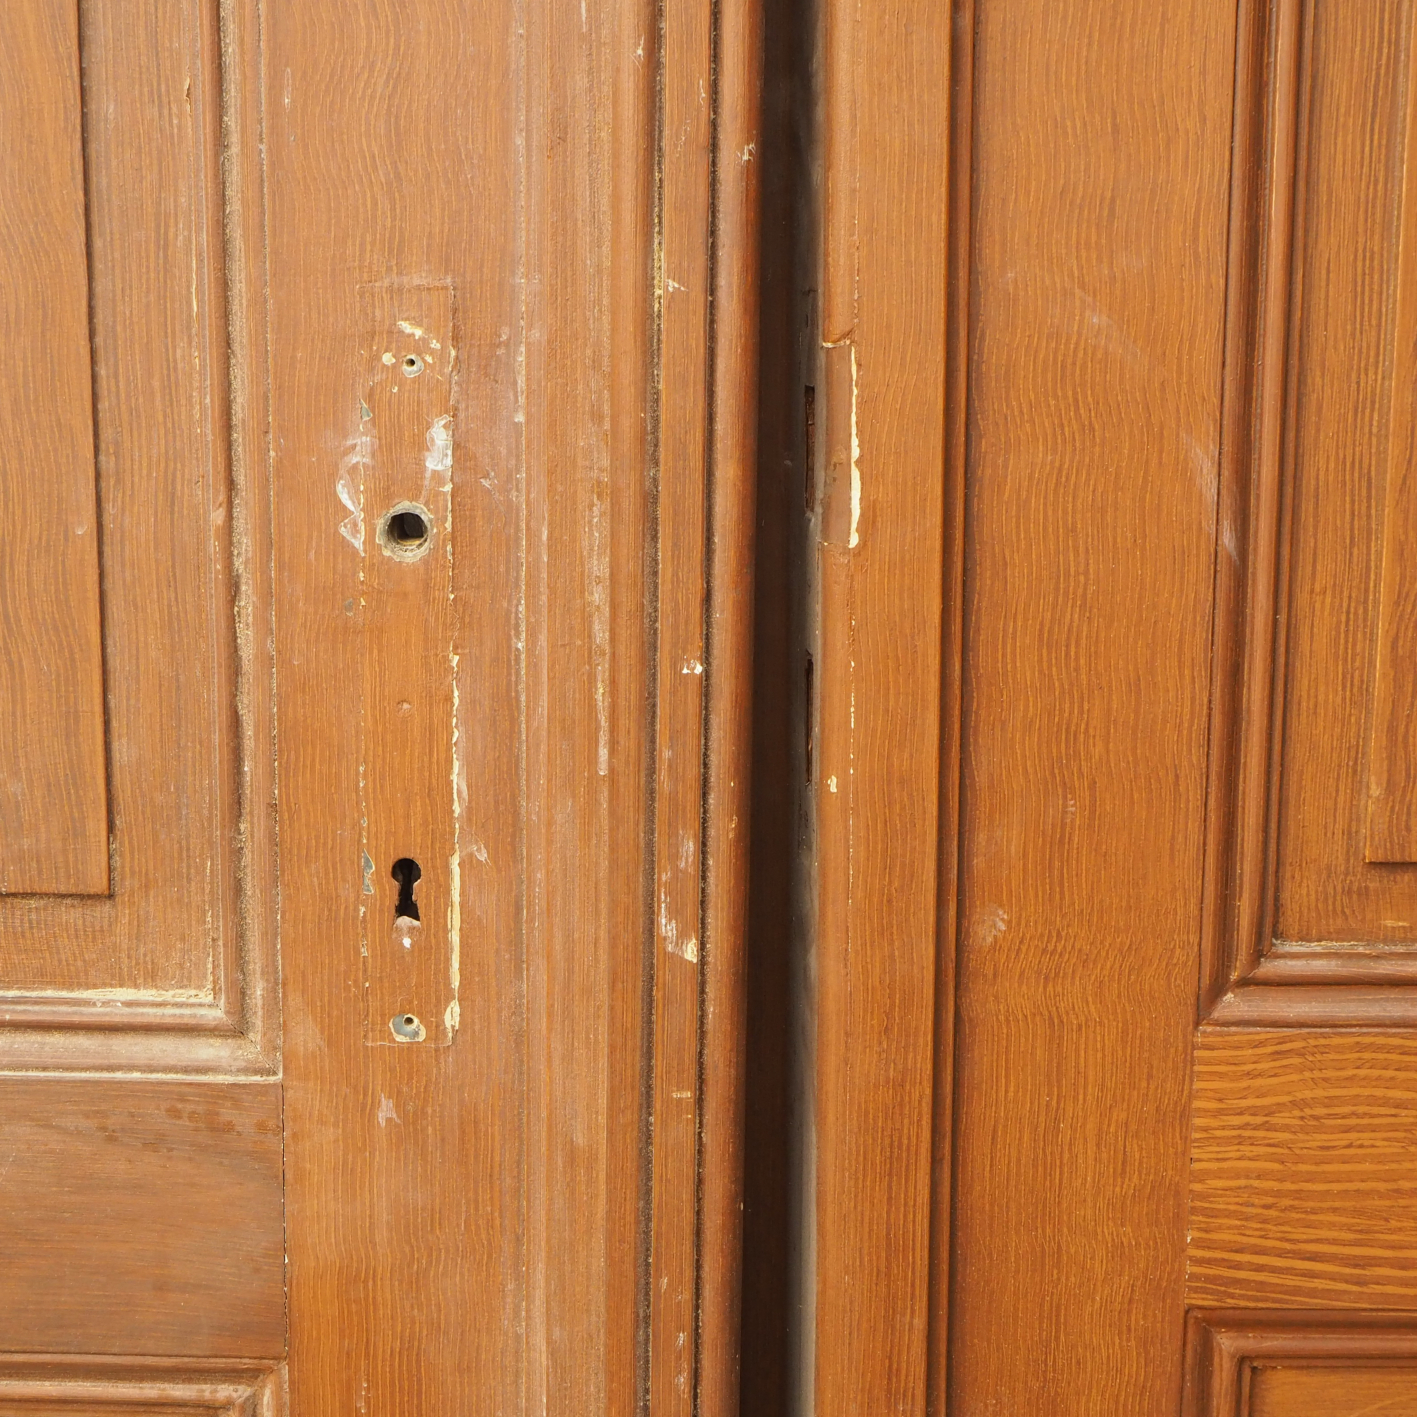 Triple wooden doors (H 284  x  W 52 cm + 83 cm + 54.5 cm))- Right